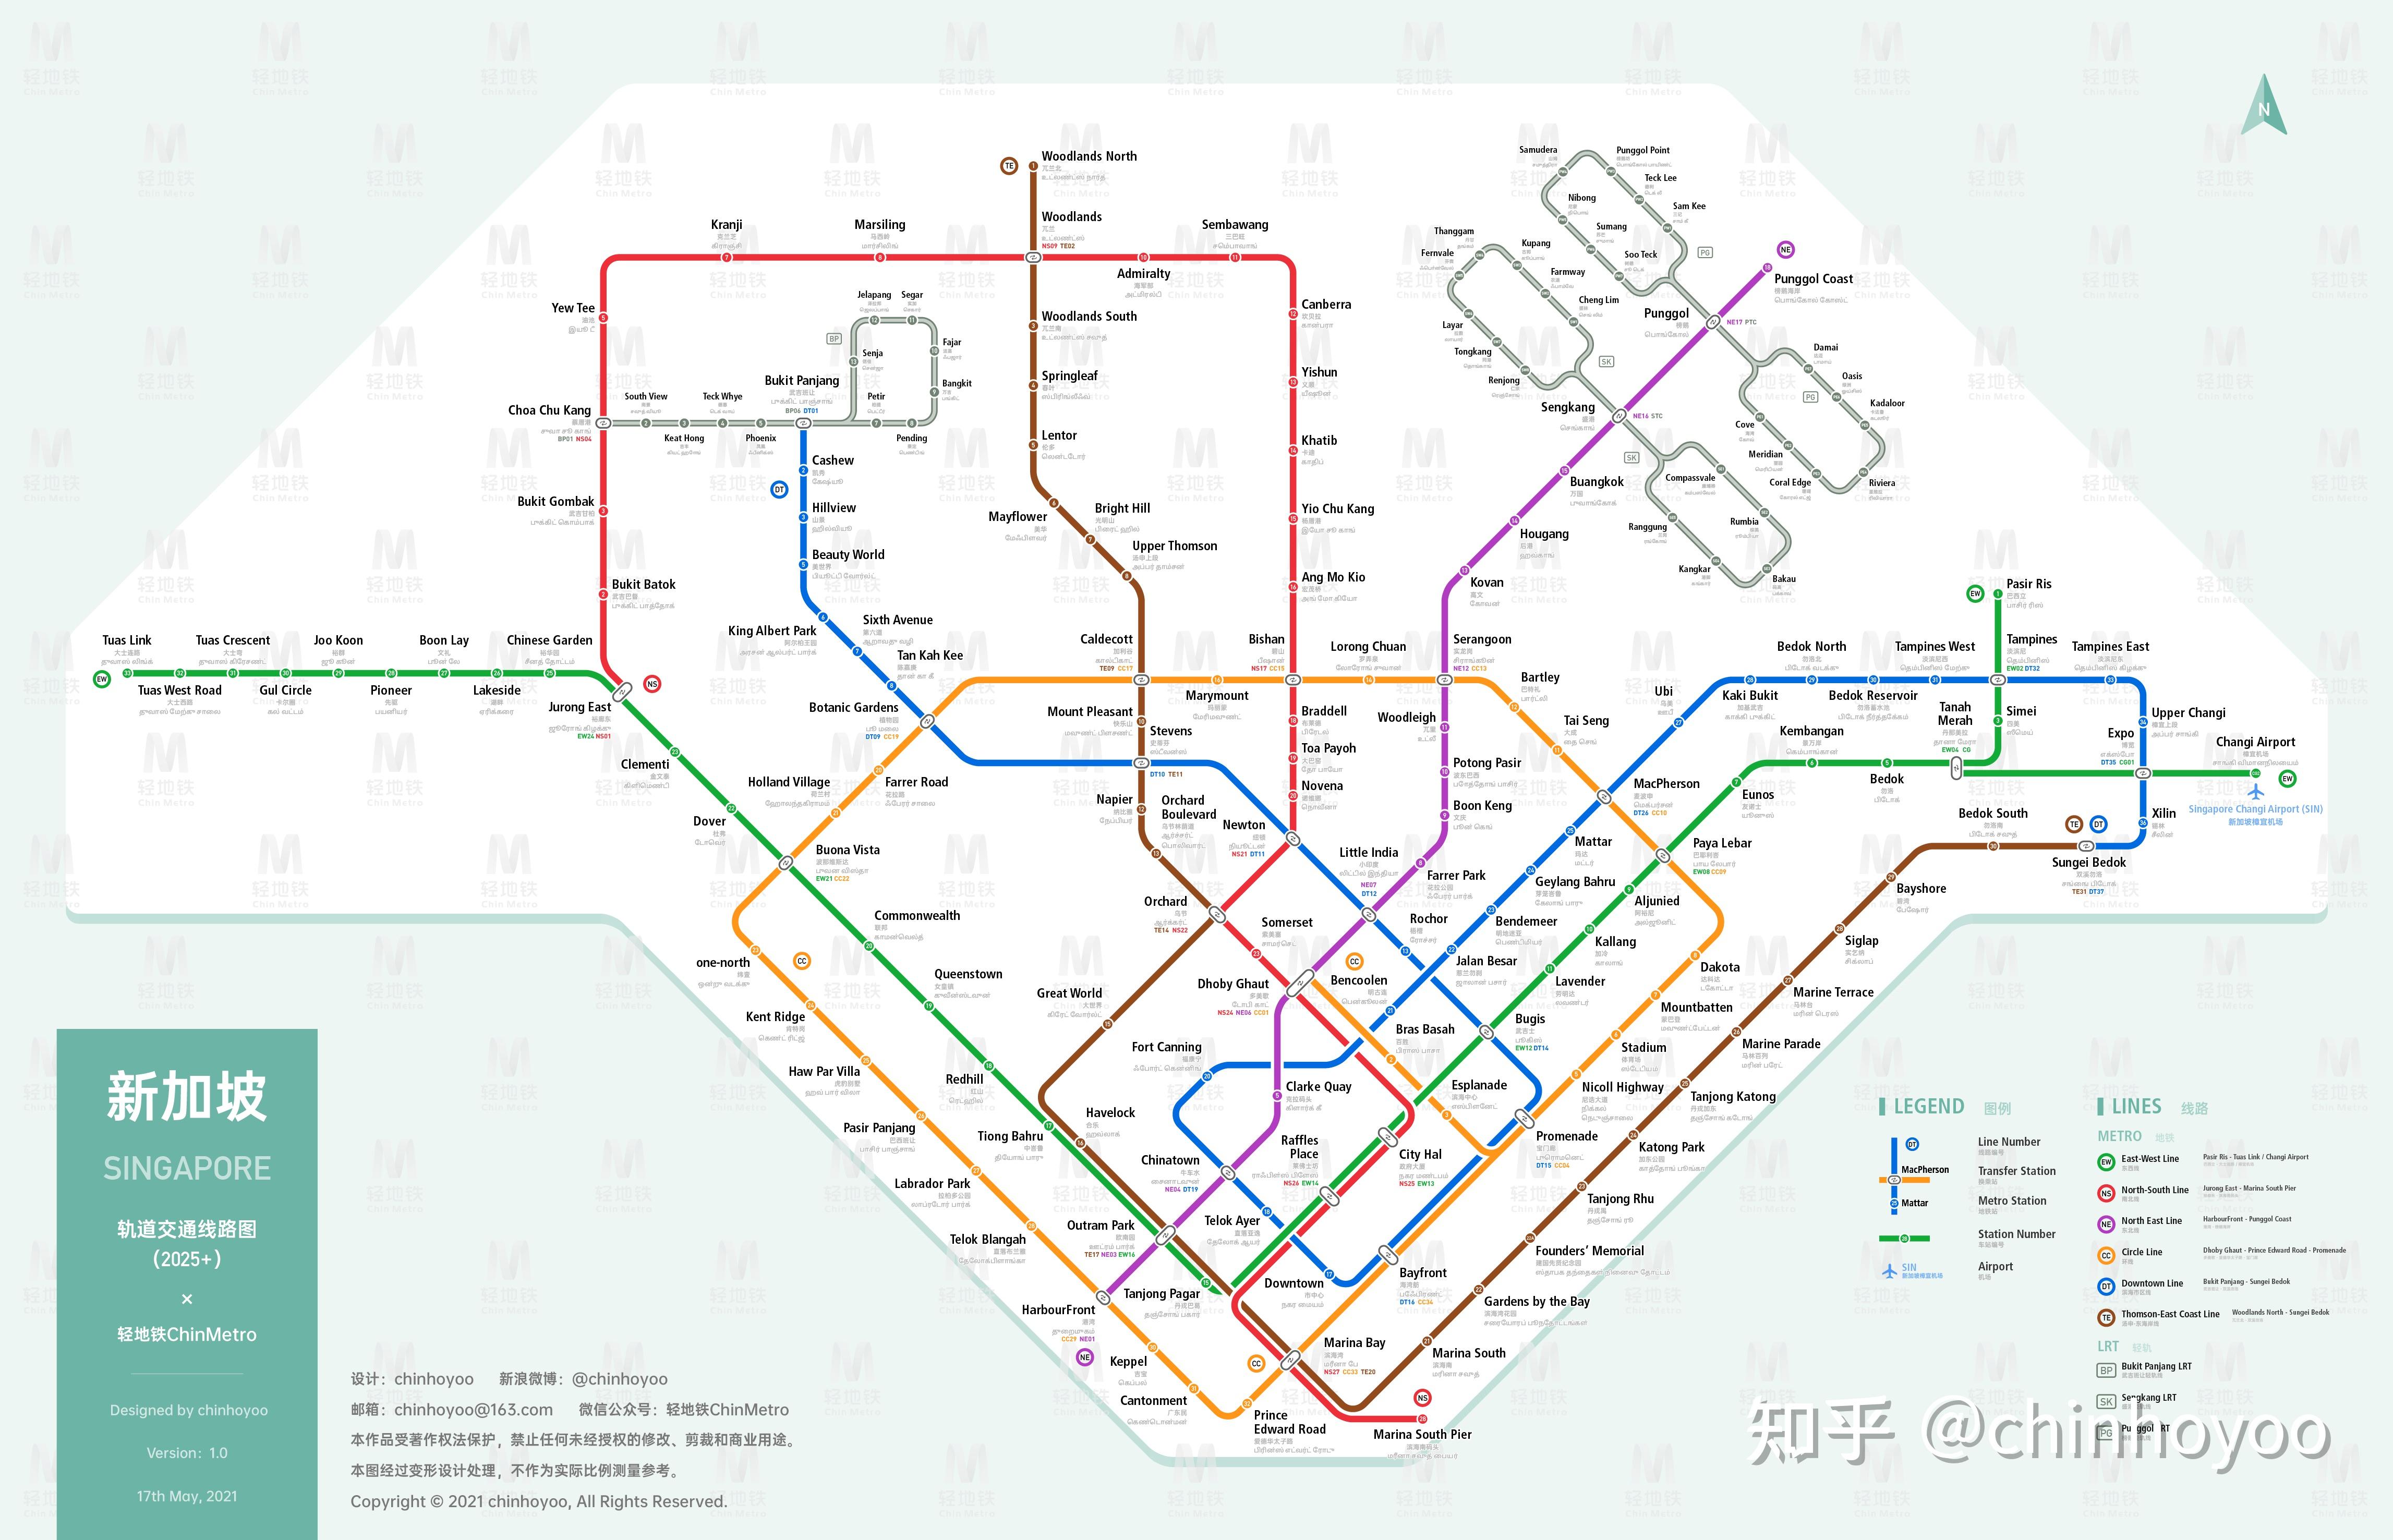 新加坡地鐵及輕軌系統地圖 | 范 文潔 | Flickr